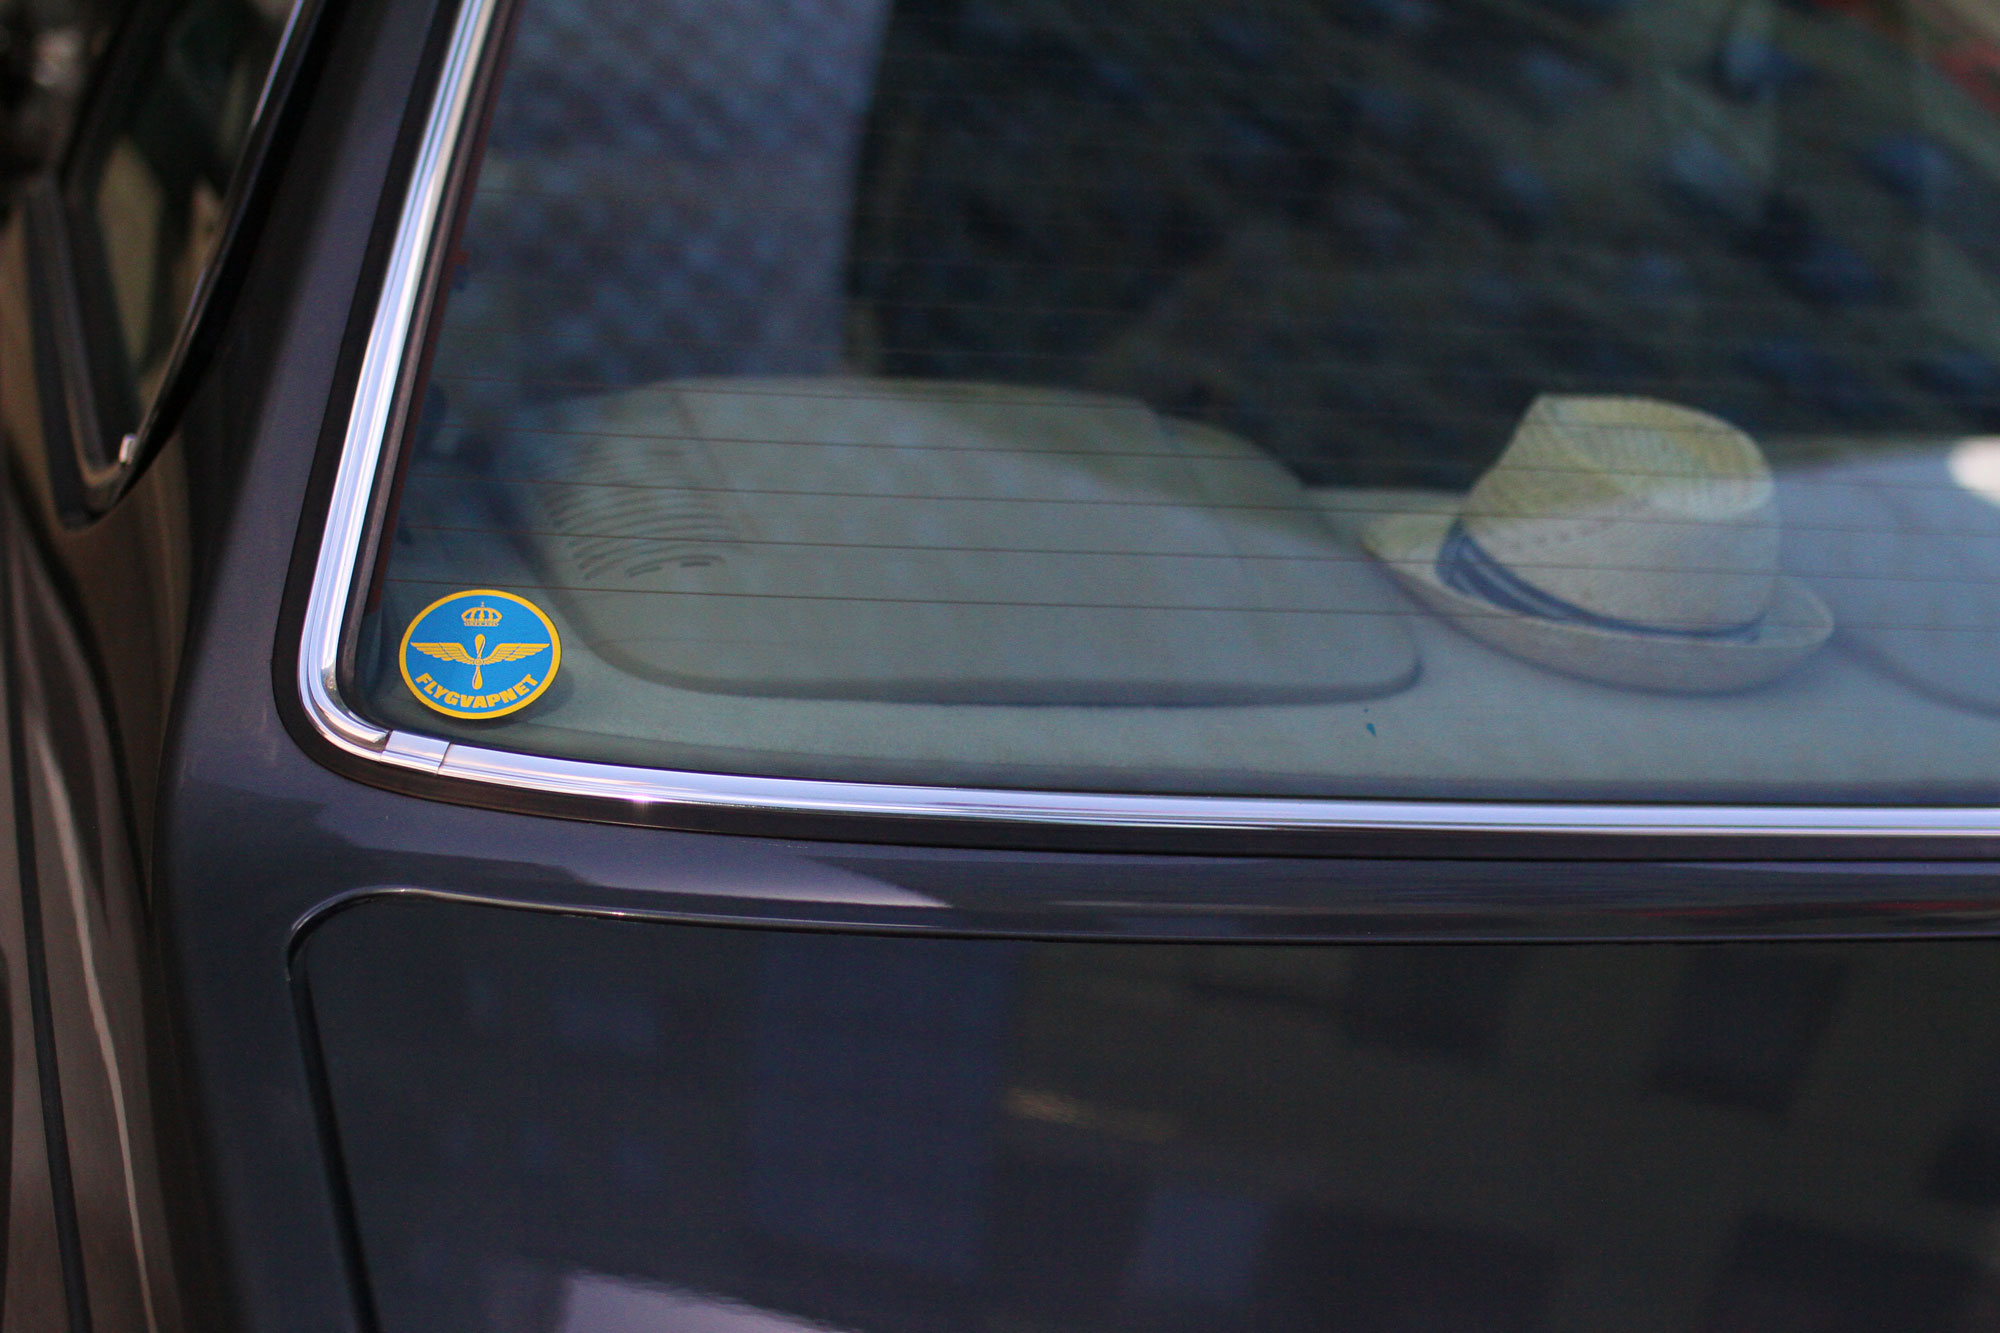 Swedish Airforce emblem on the window